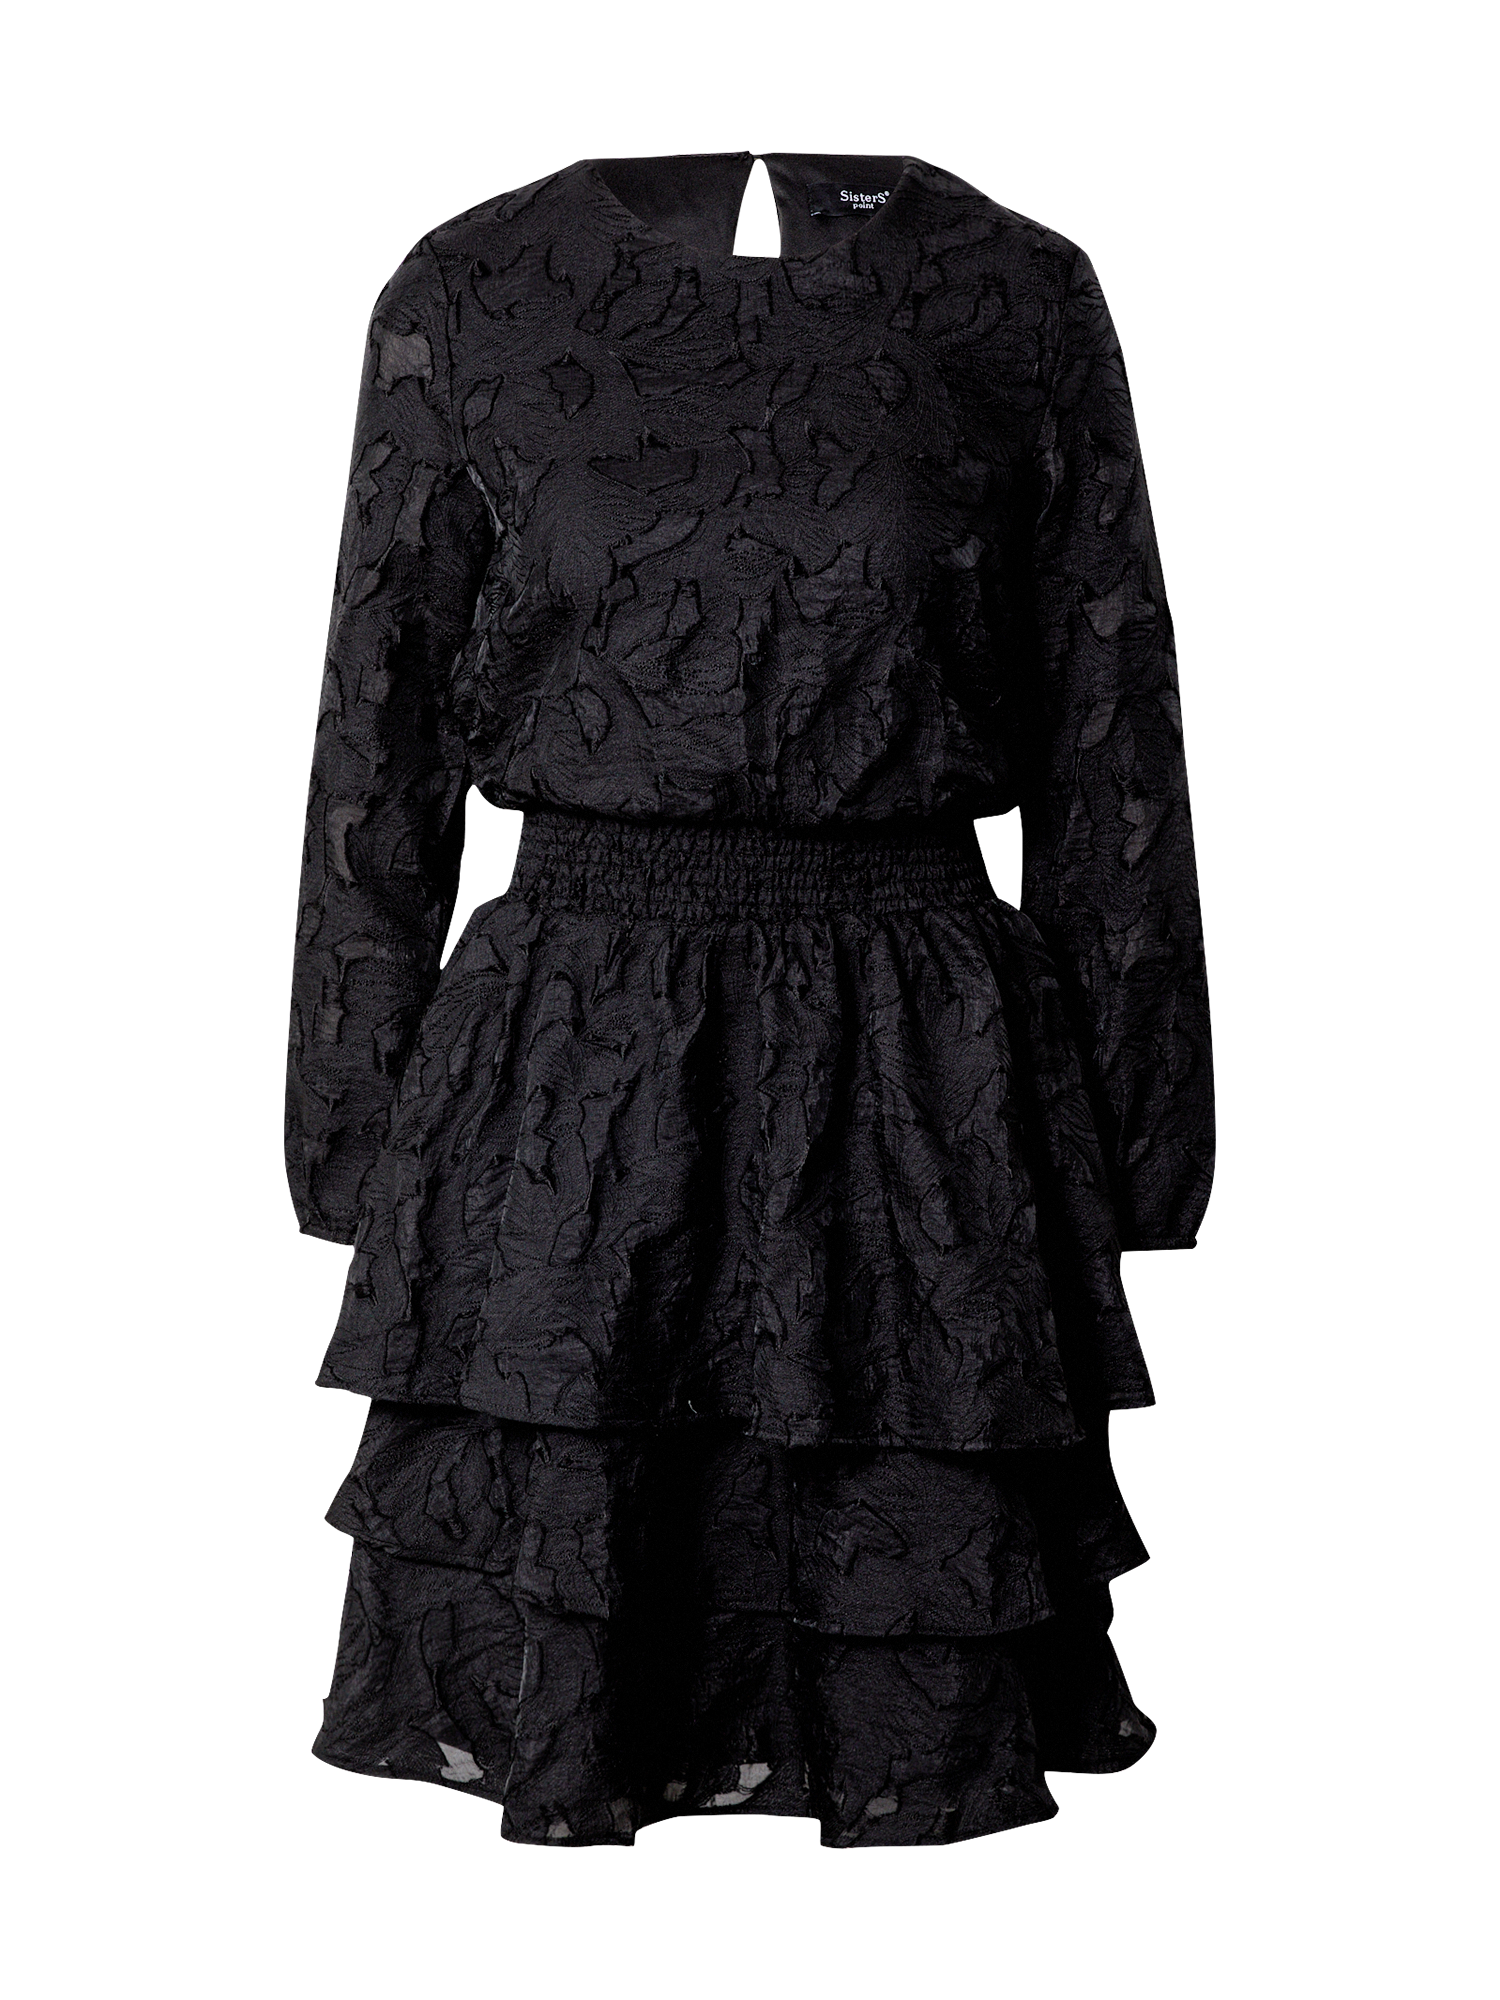 Sukienki FuwJQ SISTERS POINT Sukienka Nicoline w kolorze Czarnym 